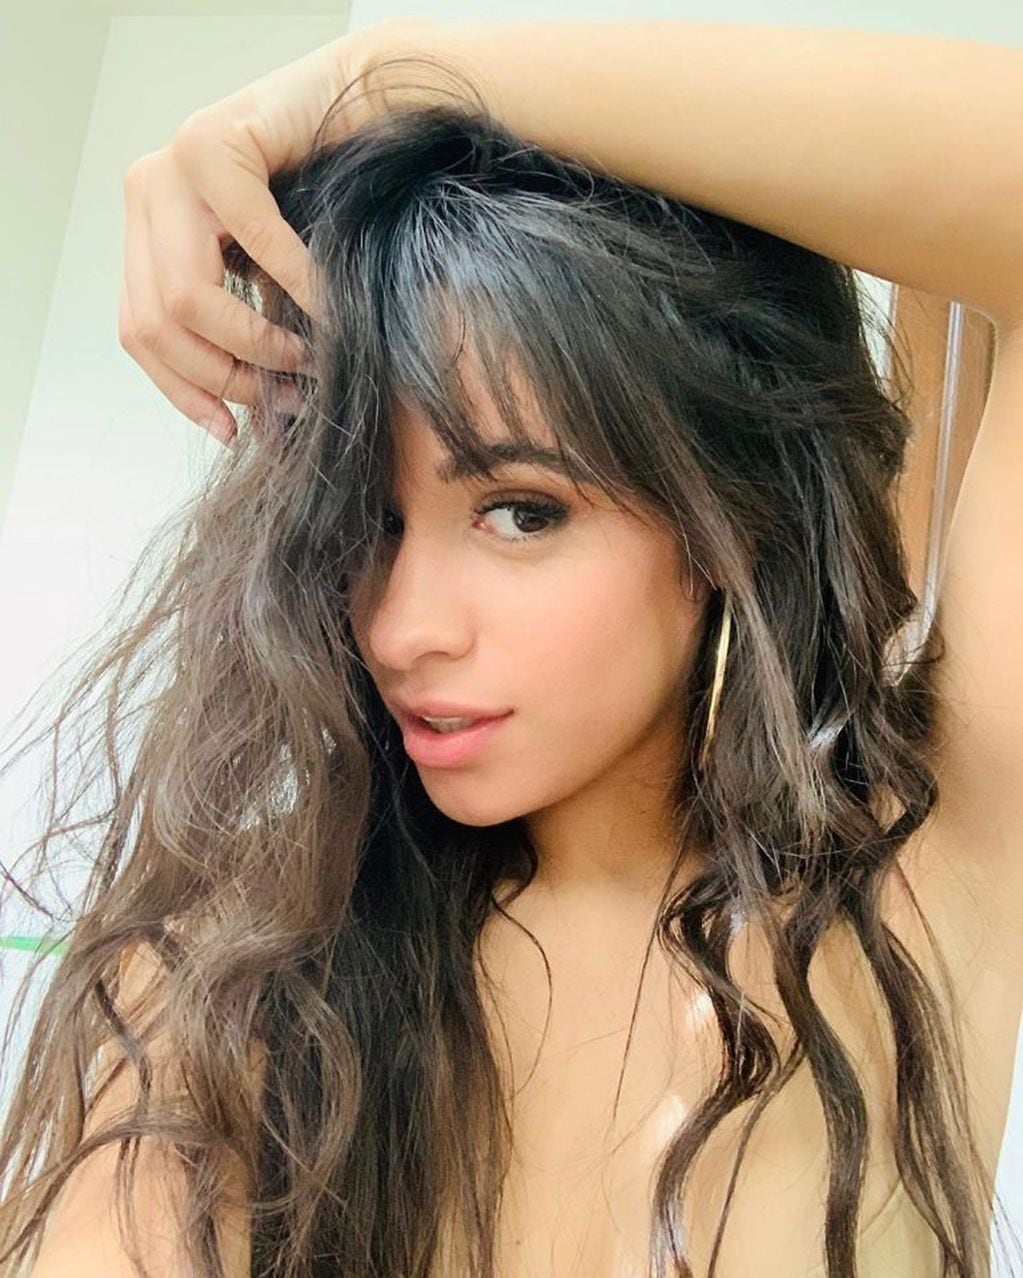 Tras lanzar su nuevo disco, Camila Cabello compartió una sensual selfie en Instagram (Foto: Instagram/ @camila_cabello)